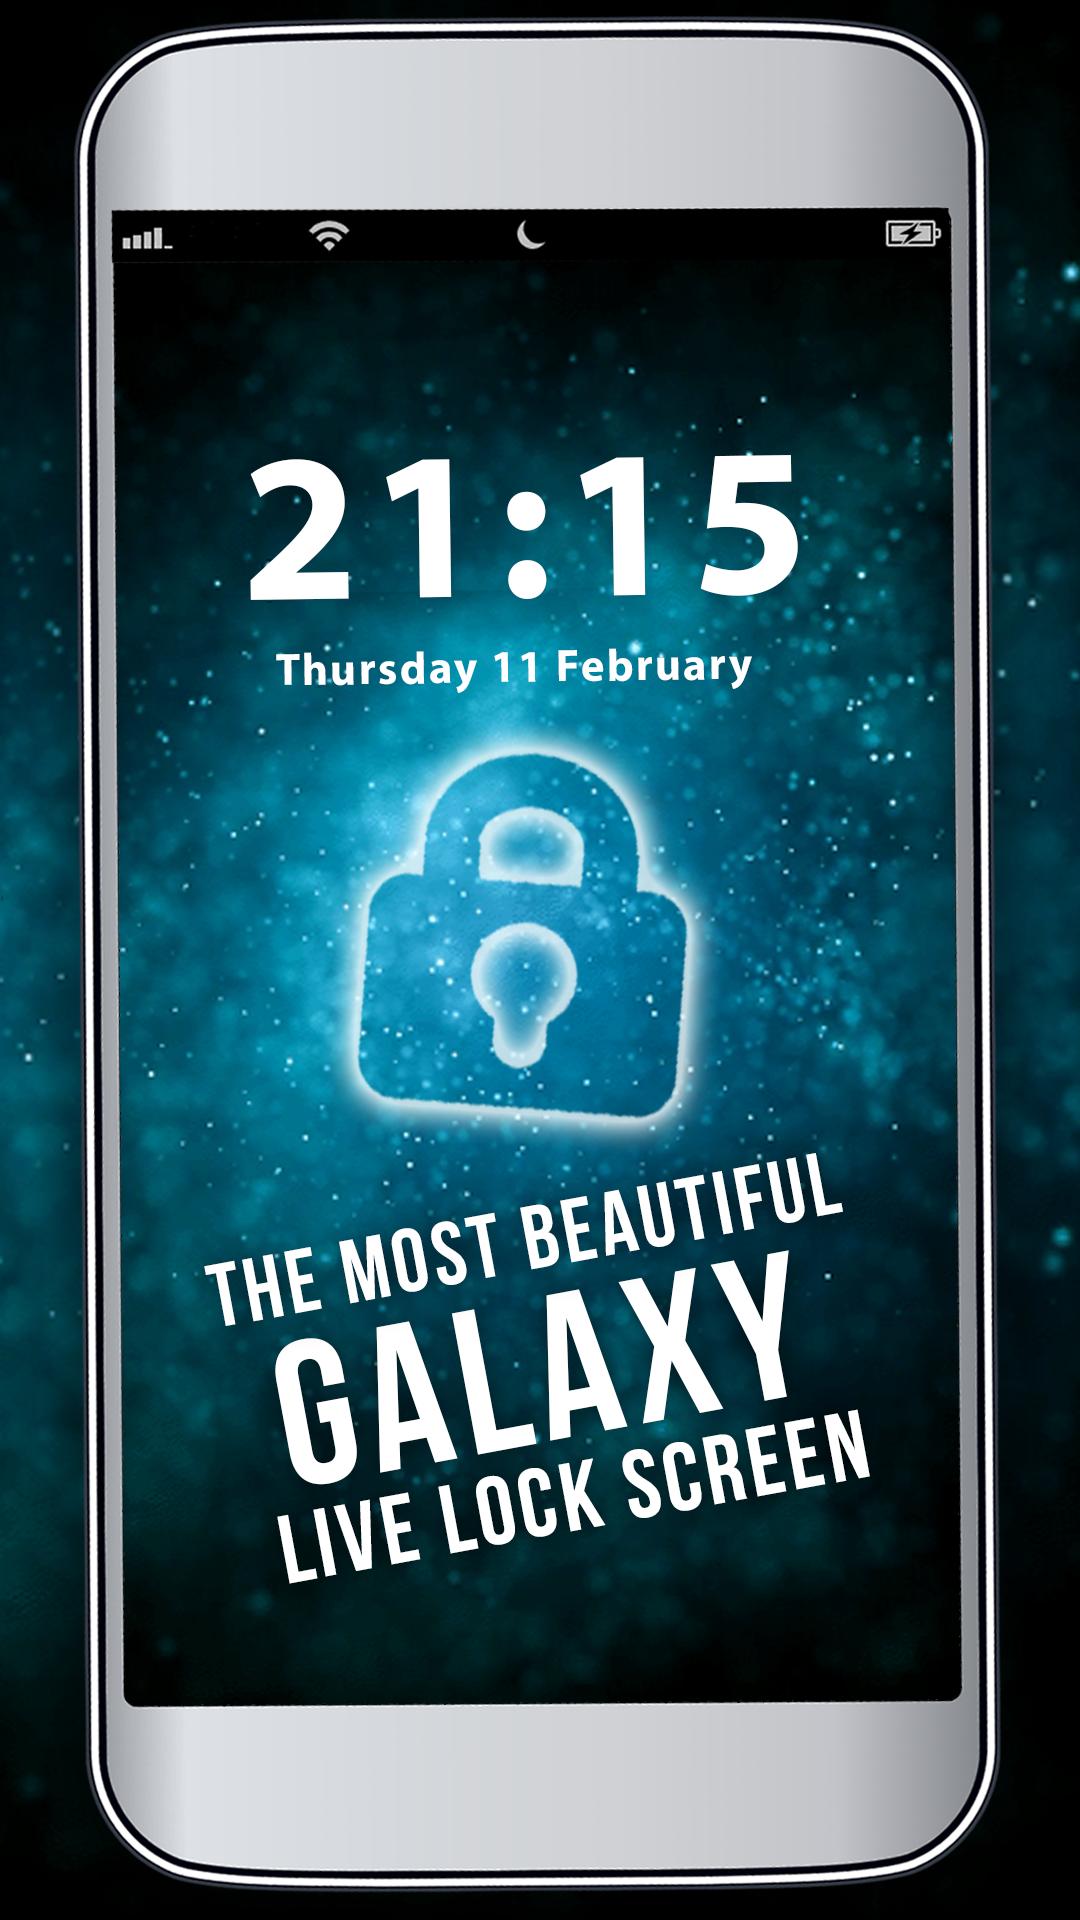 Android 用の 銀河ロック画面壁紙画像 Apk をダウンロード